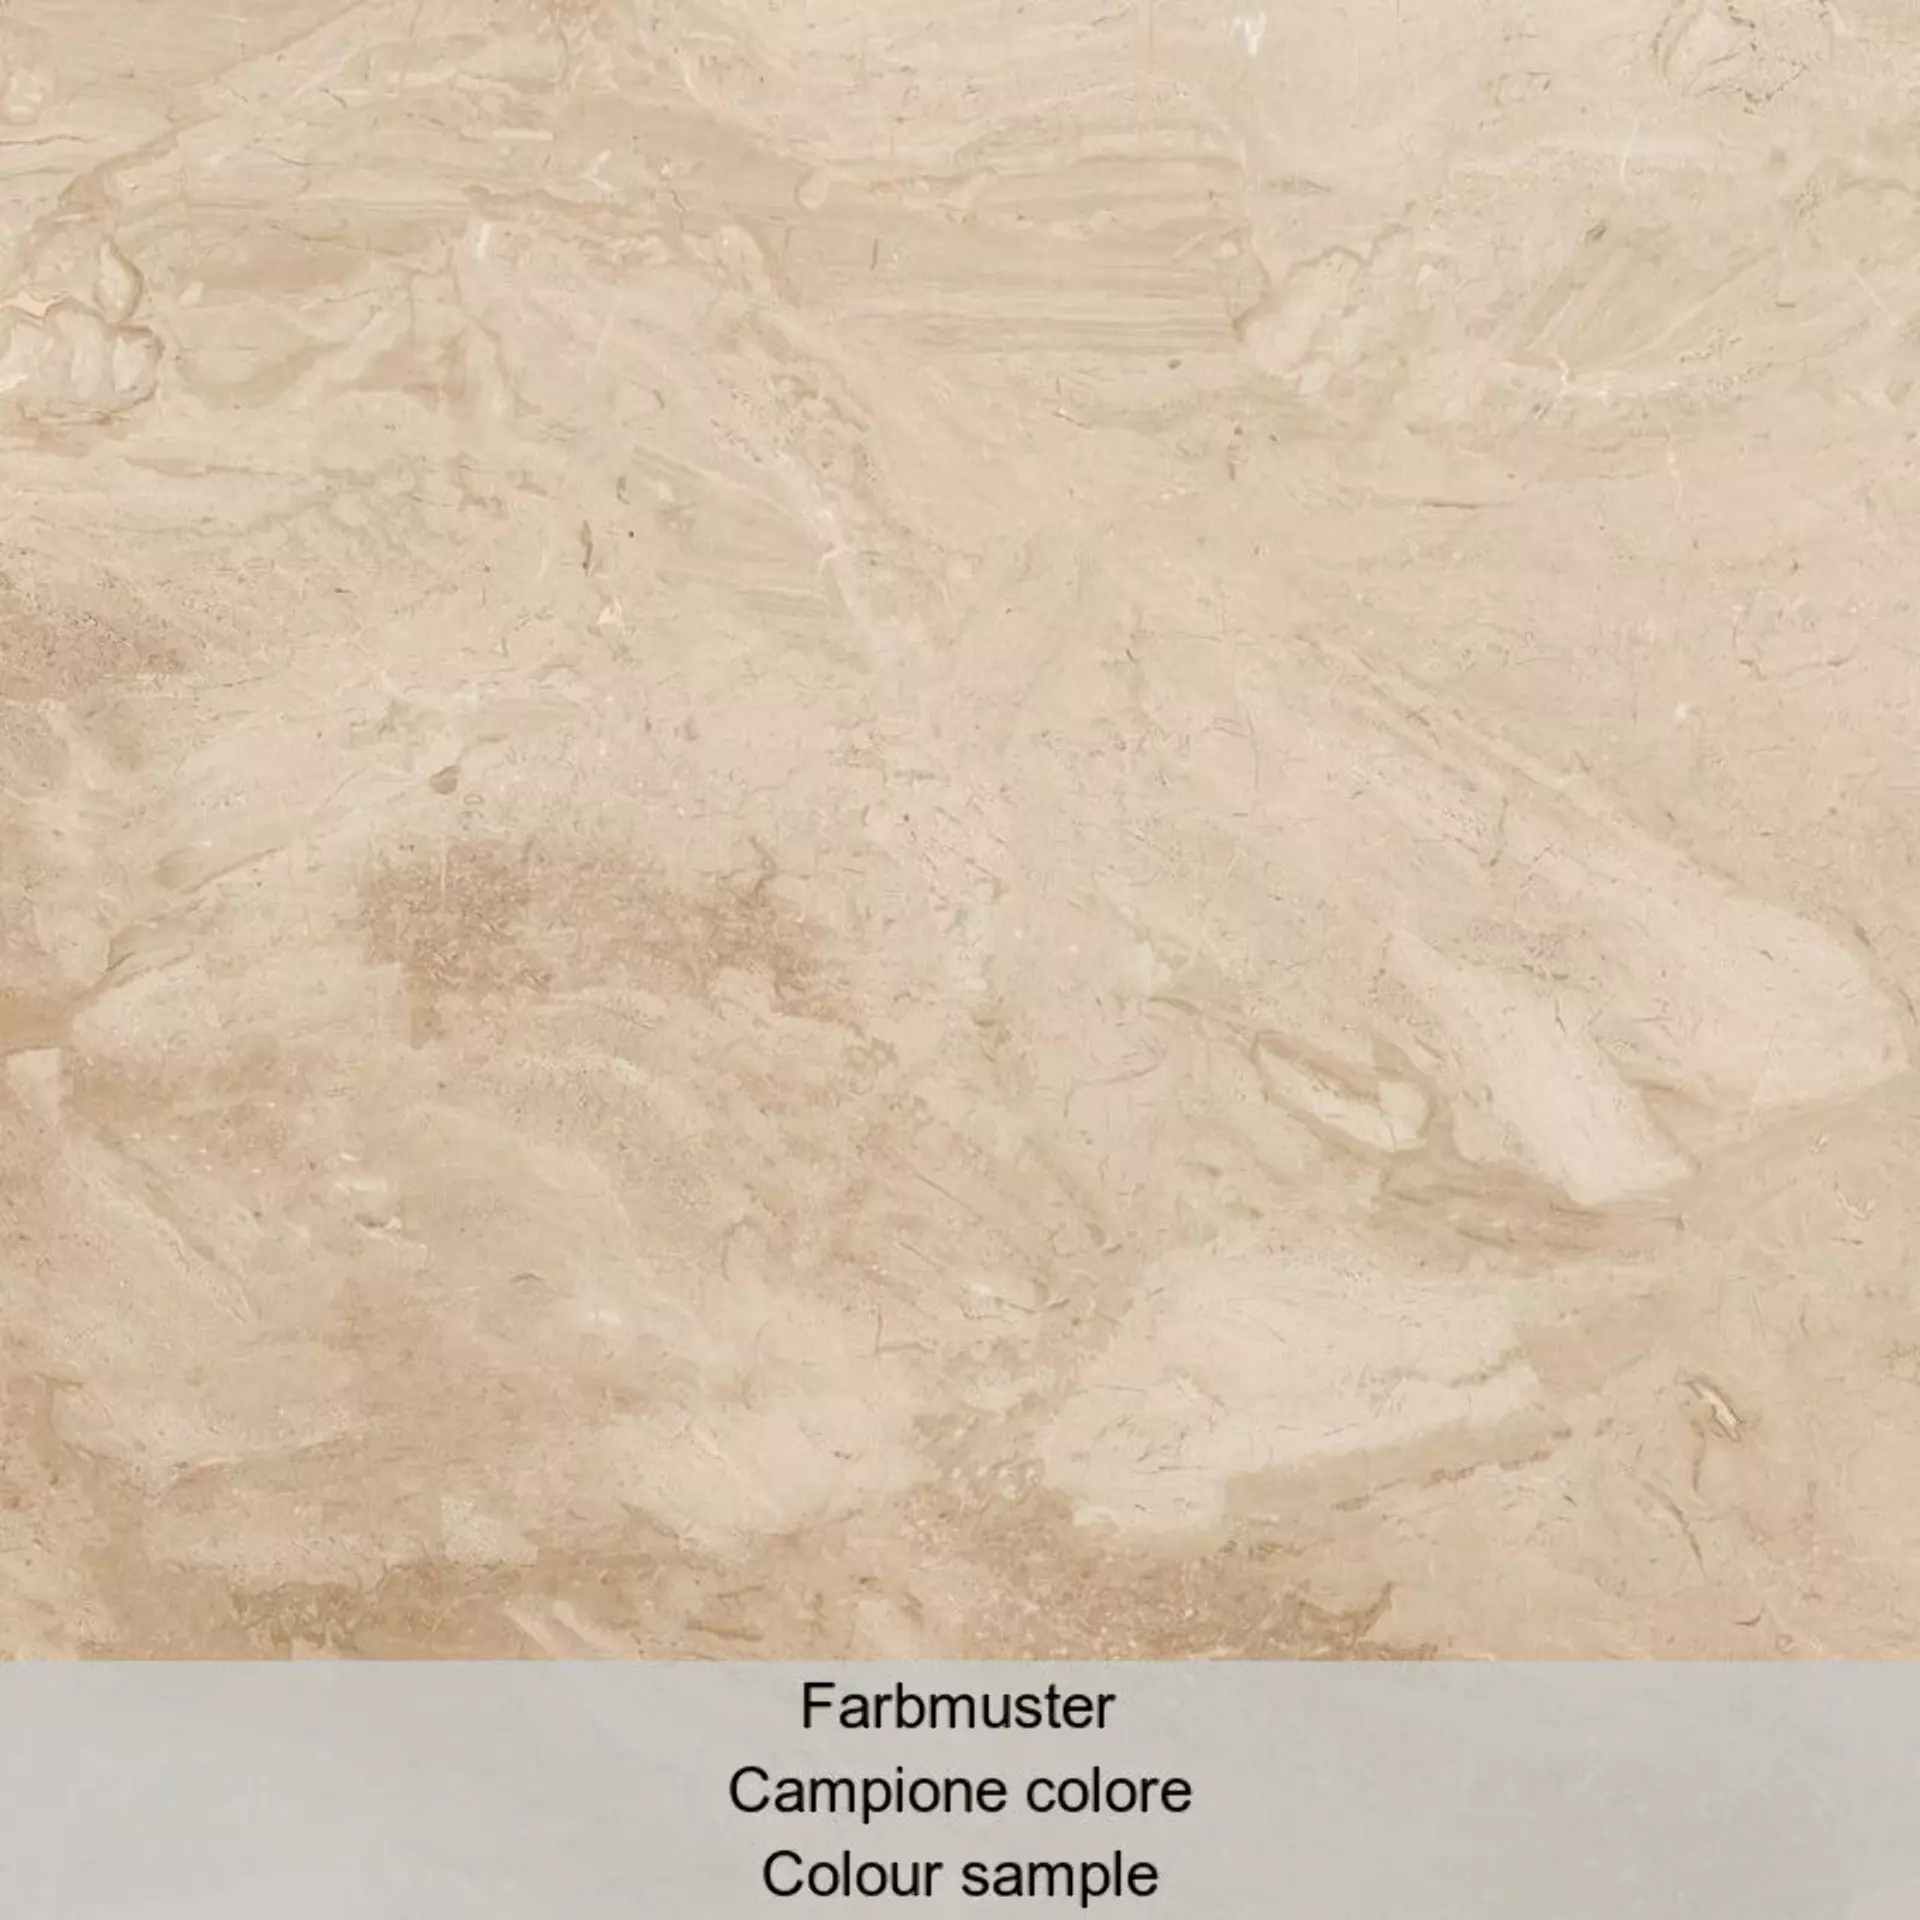 Casalgrande Marmoker Breccia Carsica Naturale – Matt Breccia Carsica 10990008 natur matt 90x90cm rektifiziert 10mm